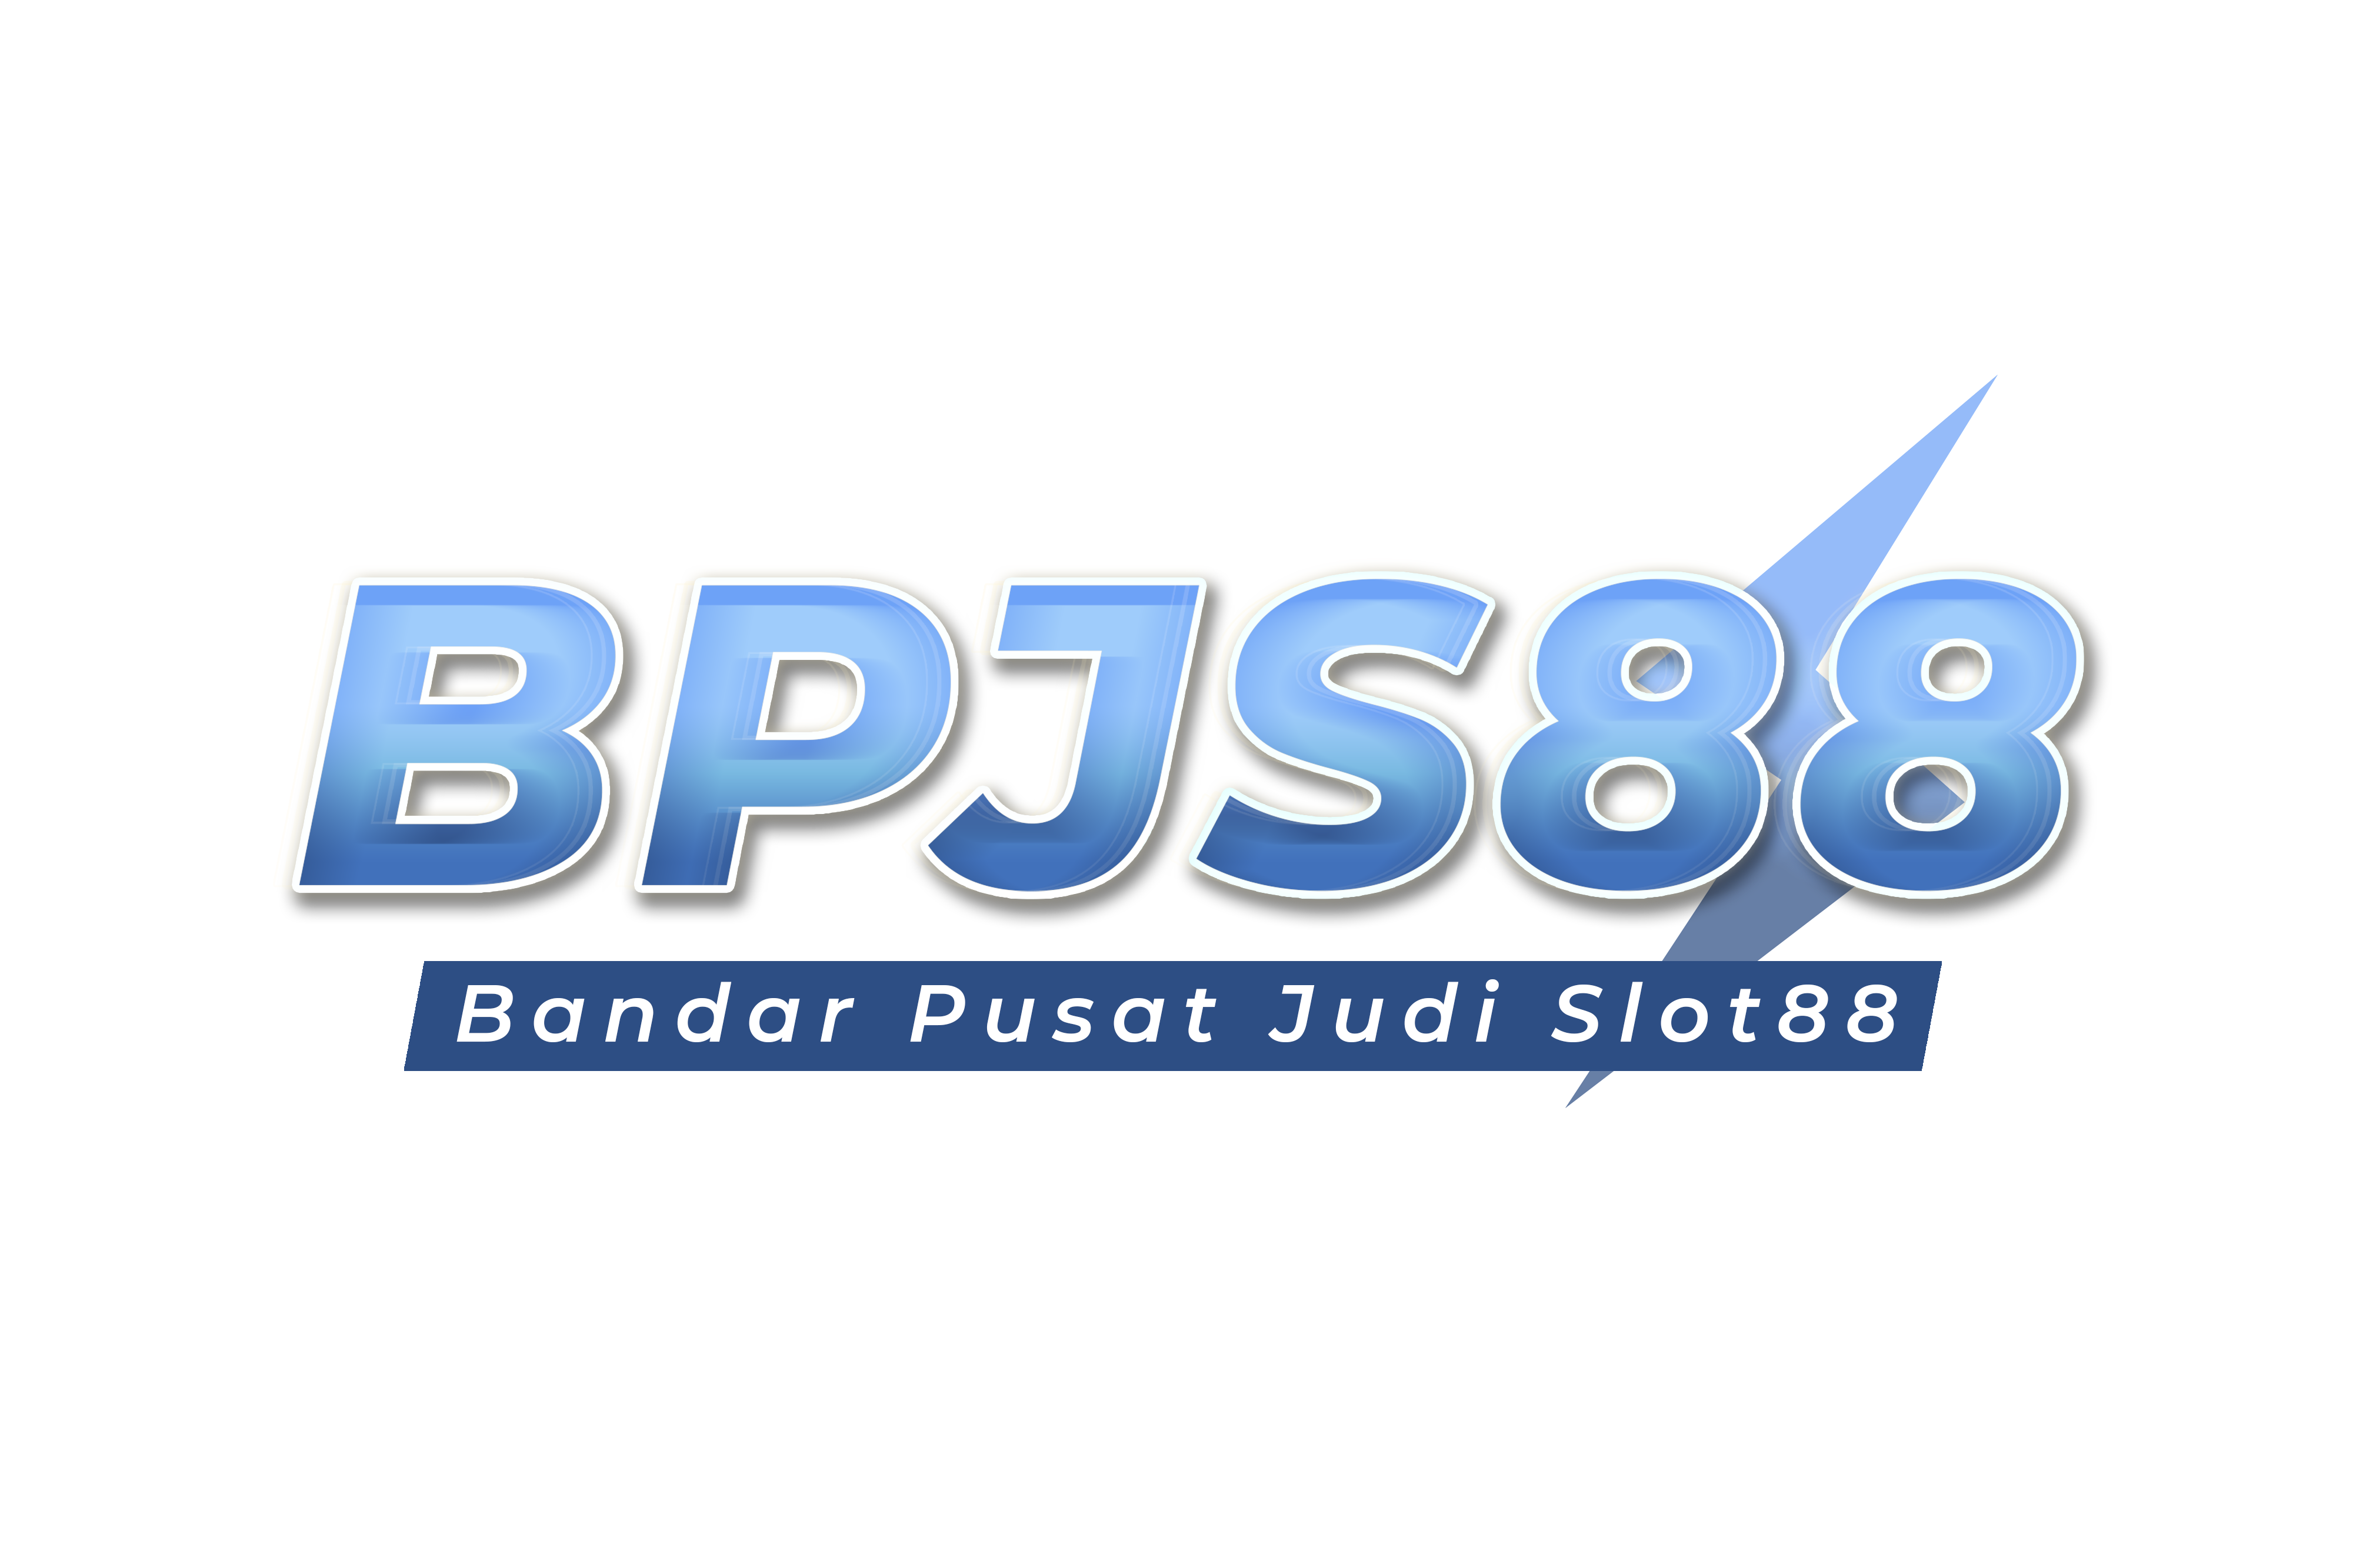 BPJS88